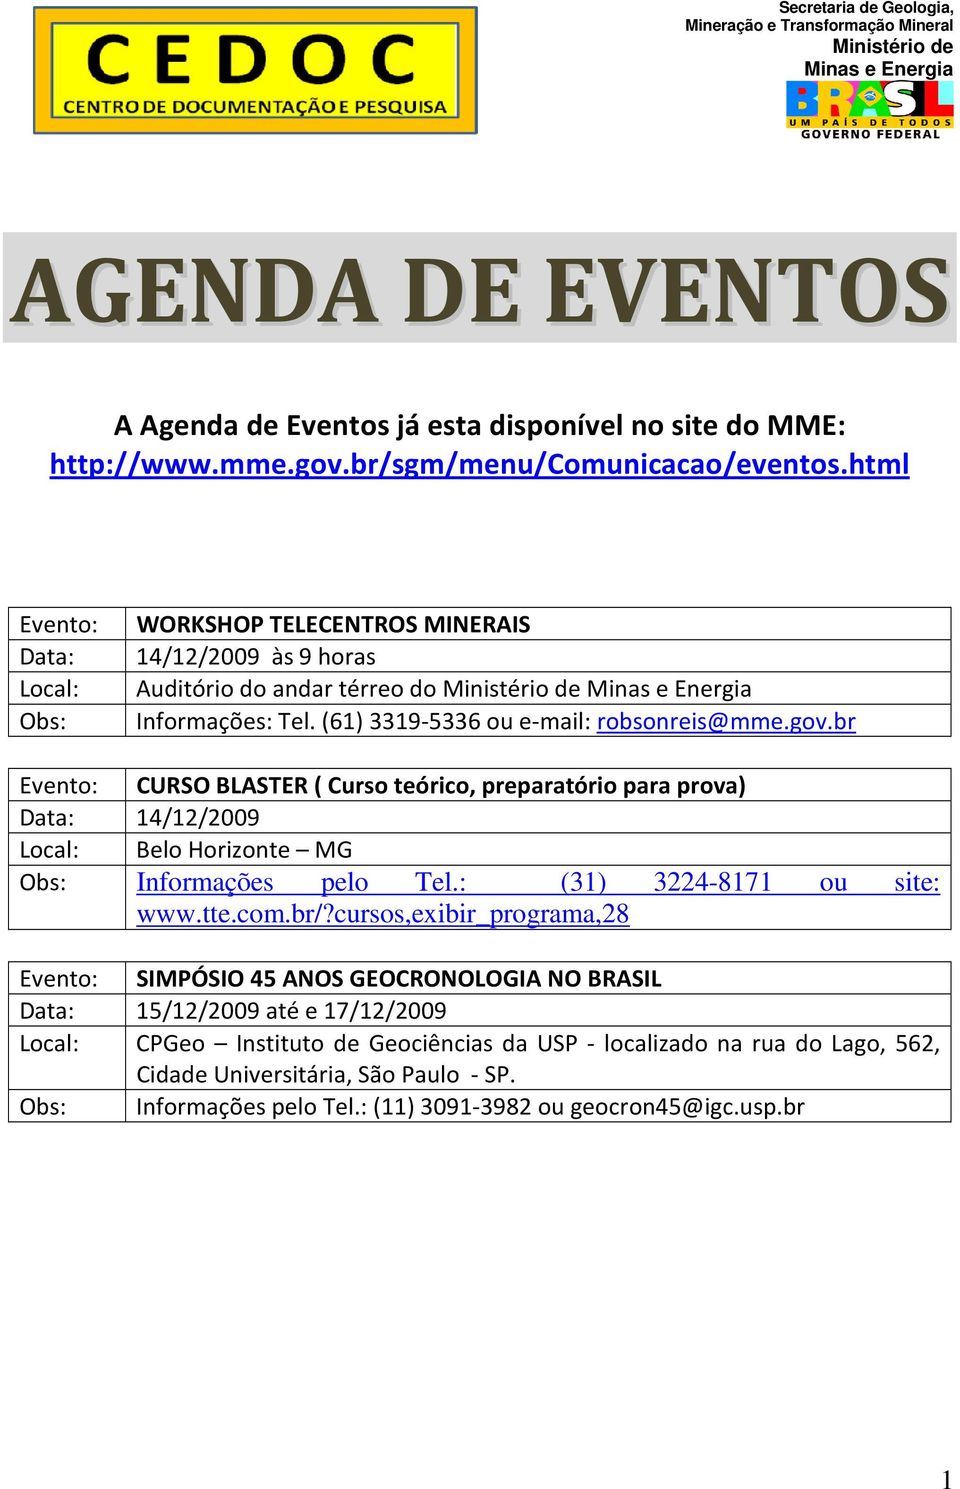 br Evento: CURSO BLASTER ( Curso teórico, preparatório para prova) Data: 14/12/2009 Local: Belo Horizonte MG Obs: Informações pelo Tel.: (31) 3224-8171 ou site: www.tte.com.br/?